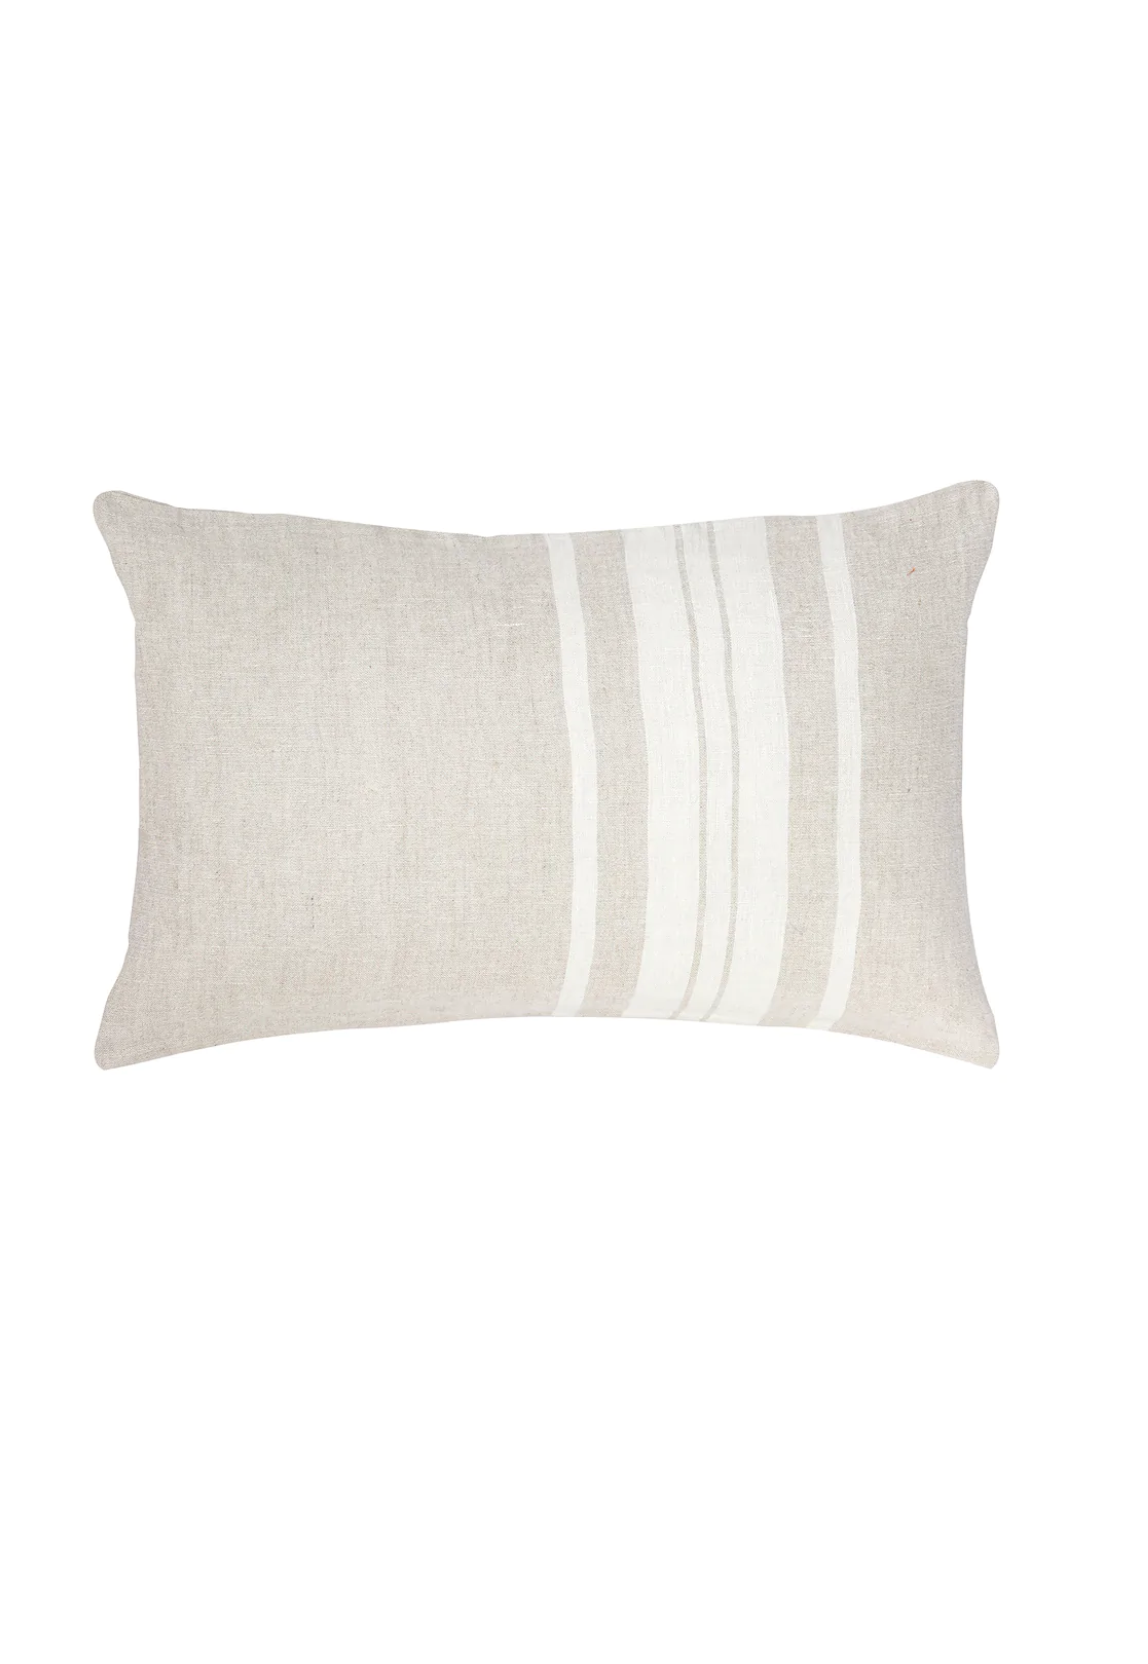 Natural Beige Bold Stripes Linen Pillows